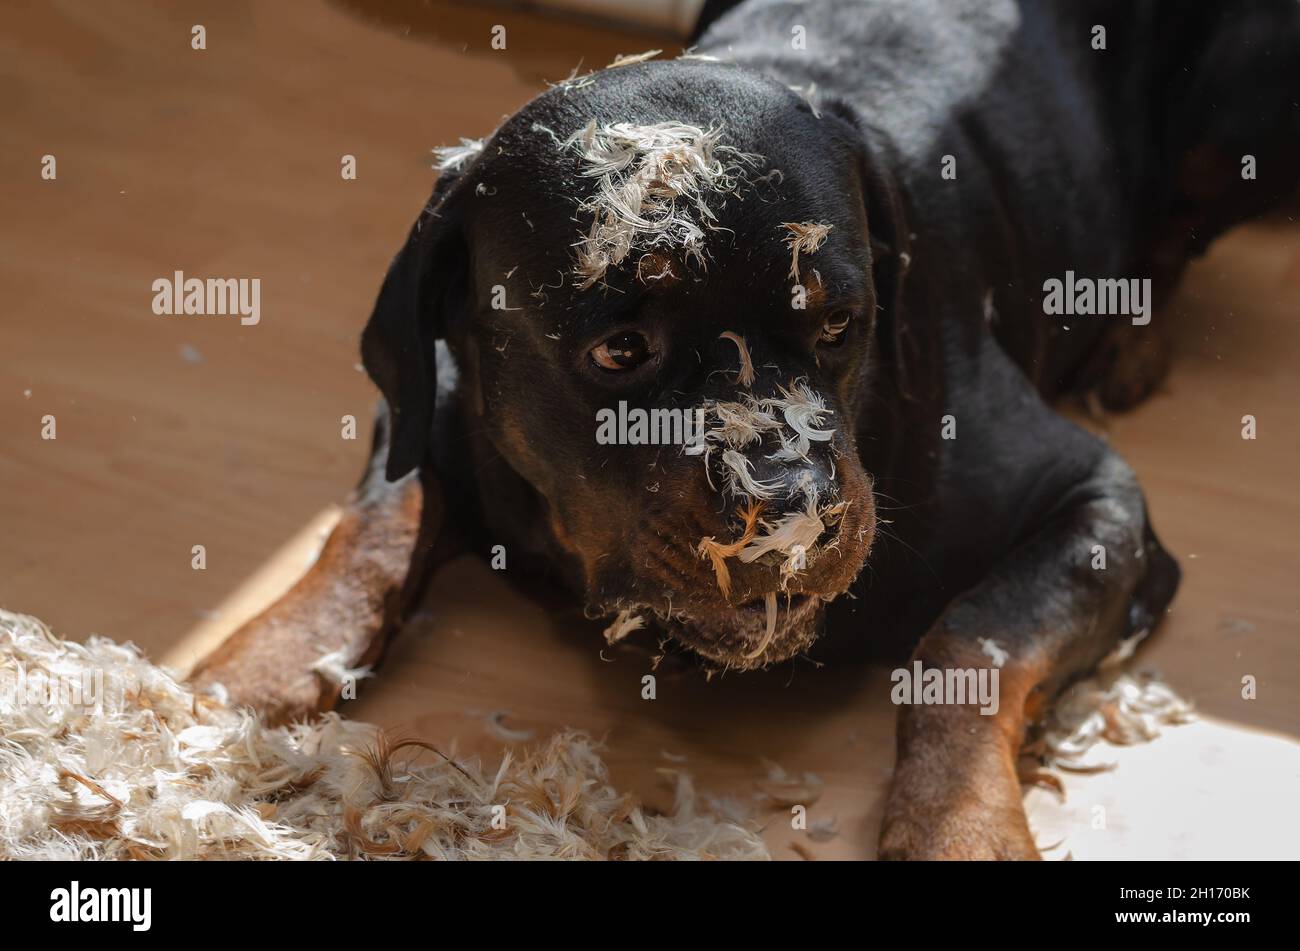 La mascota ha roto una manta de plumas. Un perro Rottweiler está acostado  en el piso de la sala de estar. Plumas en la nariz y el hocico del perro.  Interior. Se